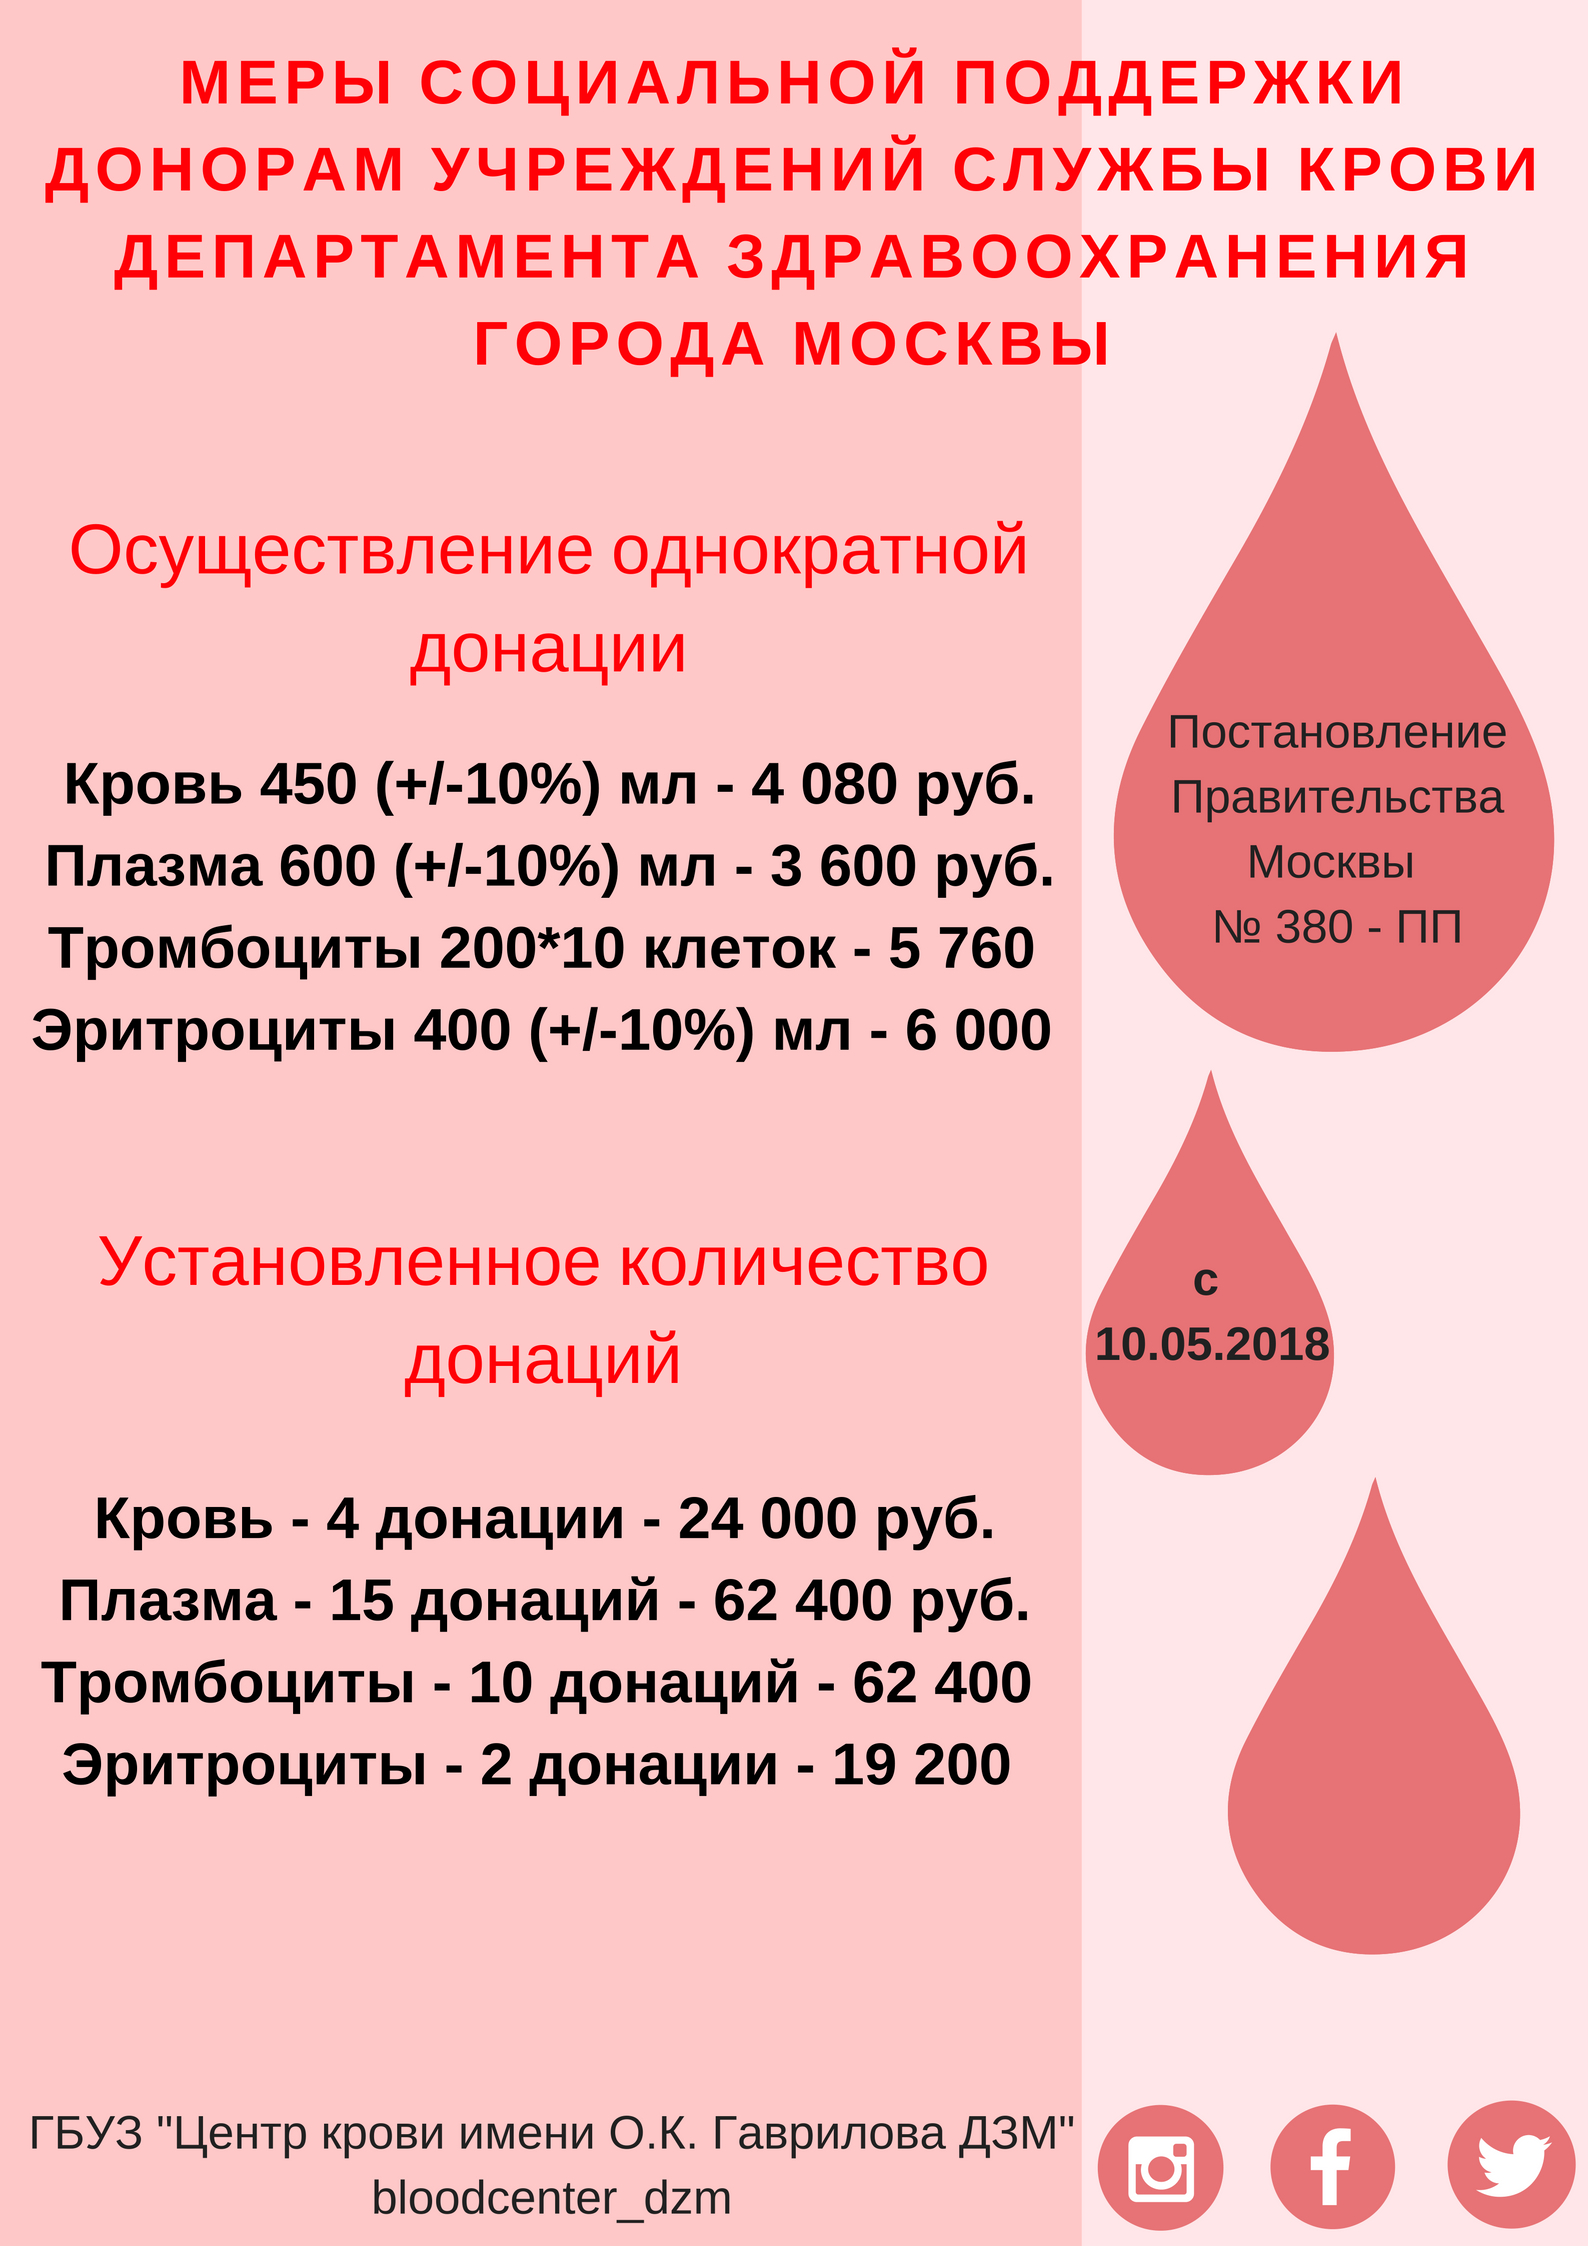 Донорство в москве адреса. Вознаграждение за донорство крови. Плата донорам за сдачу крови. Сколько платят за сдачу крови в Москве. Почётный донор Москвы льготы.